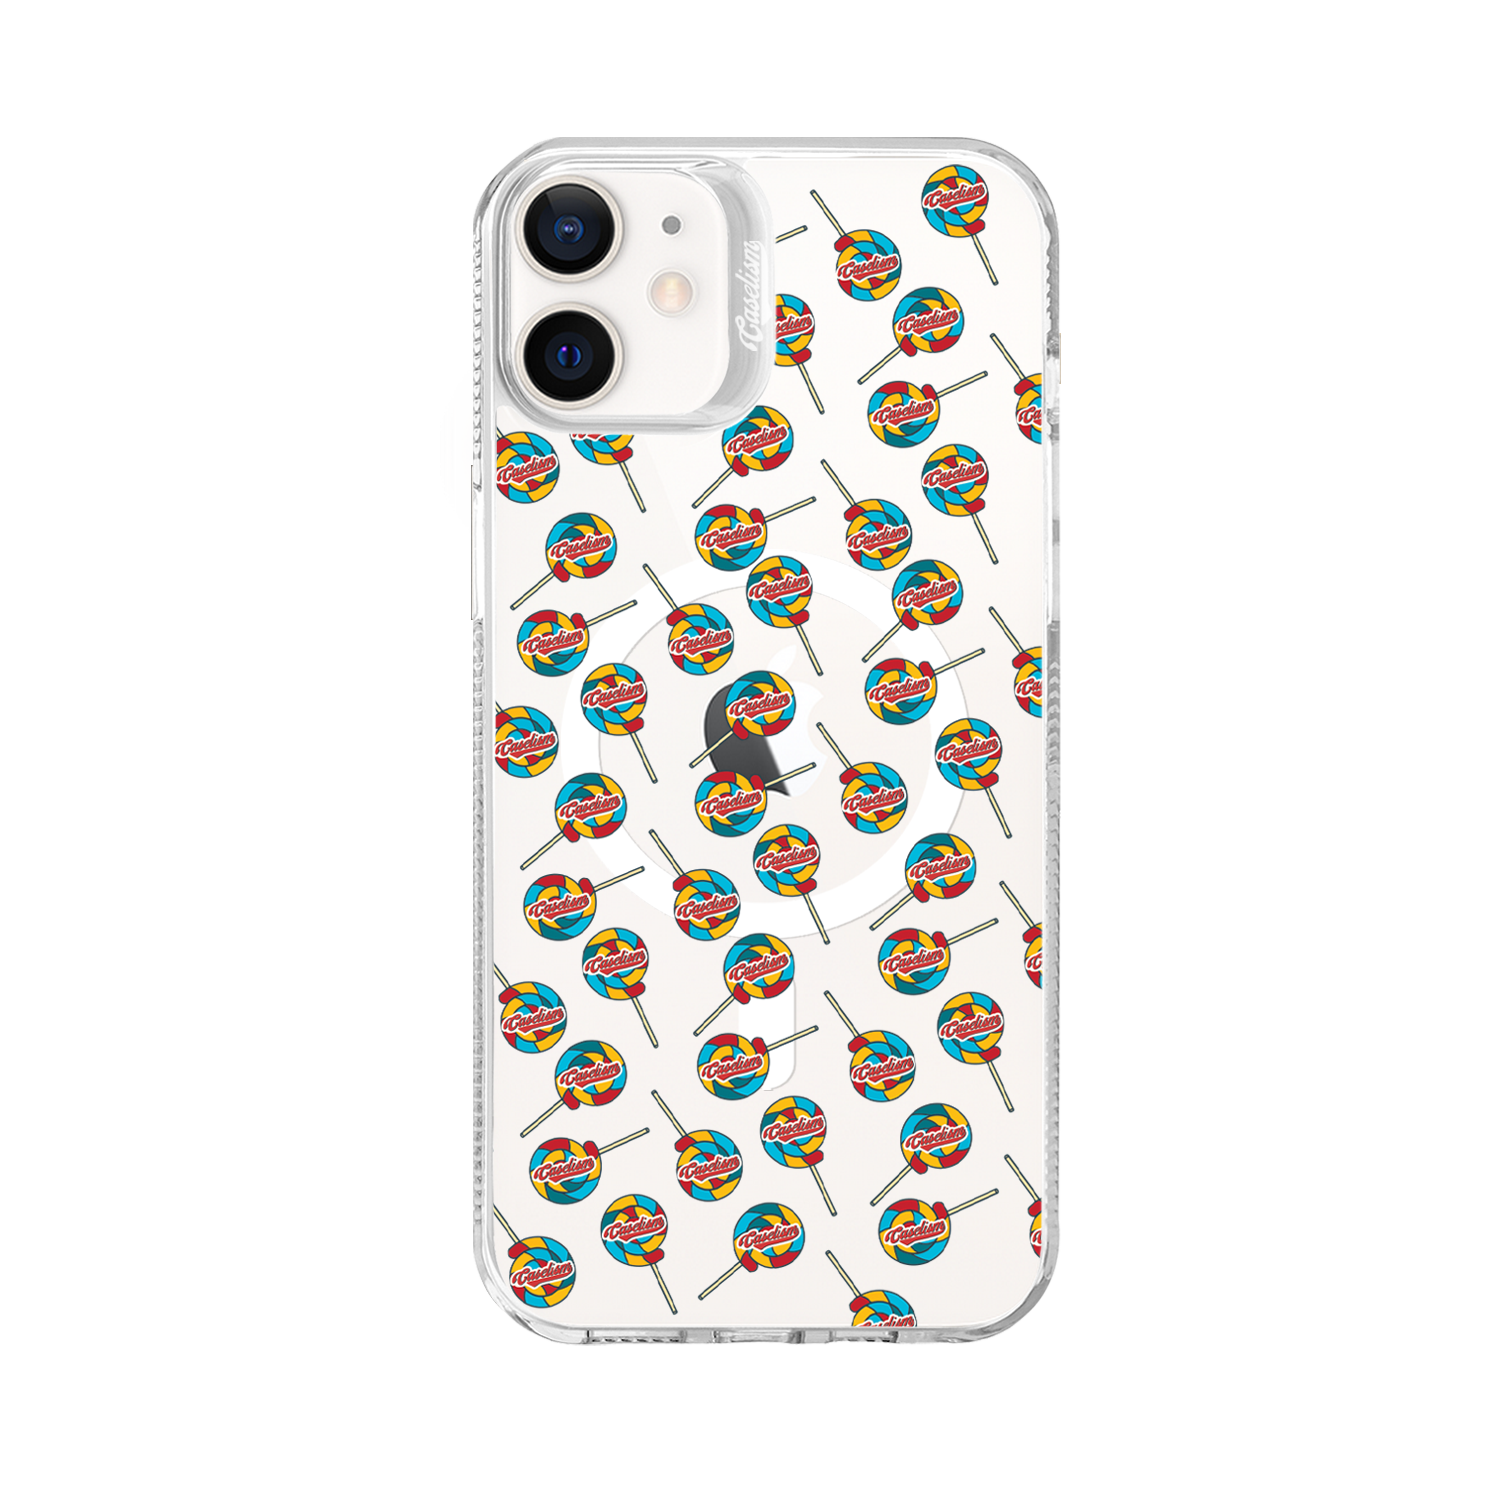 CASE002 - ColorLite Case for iPhone